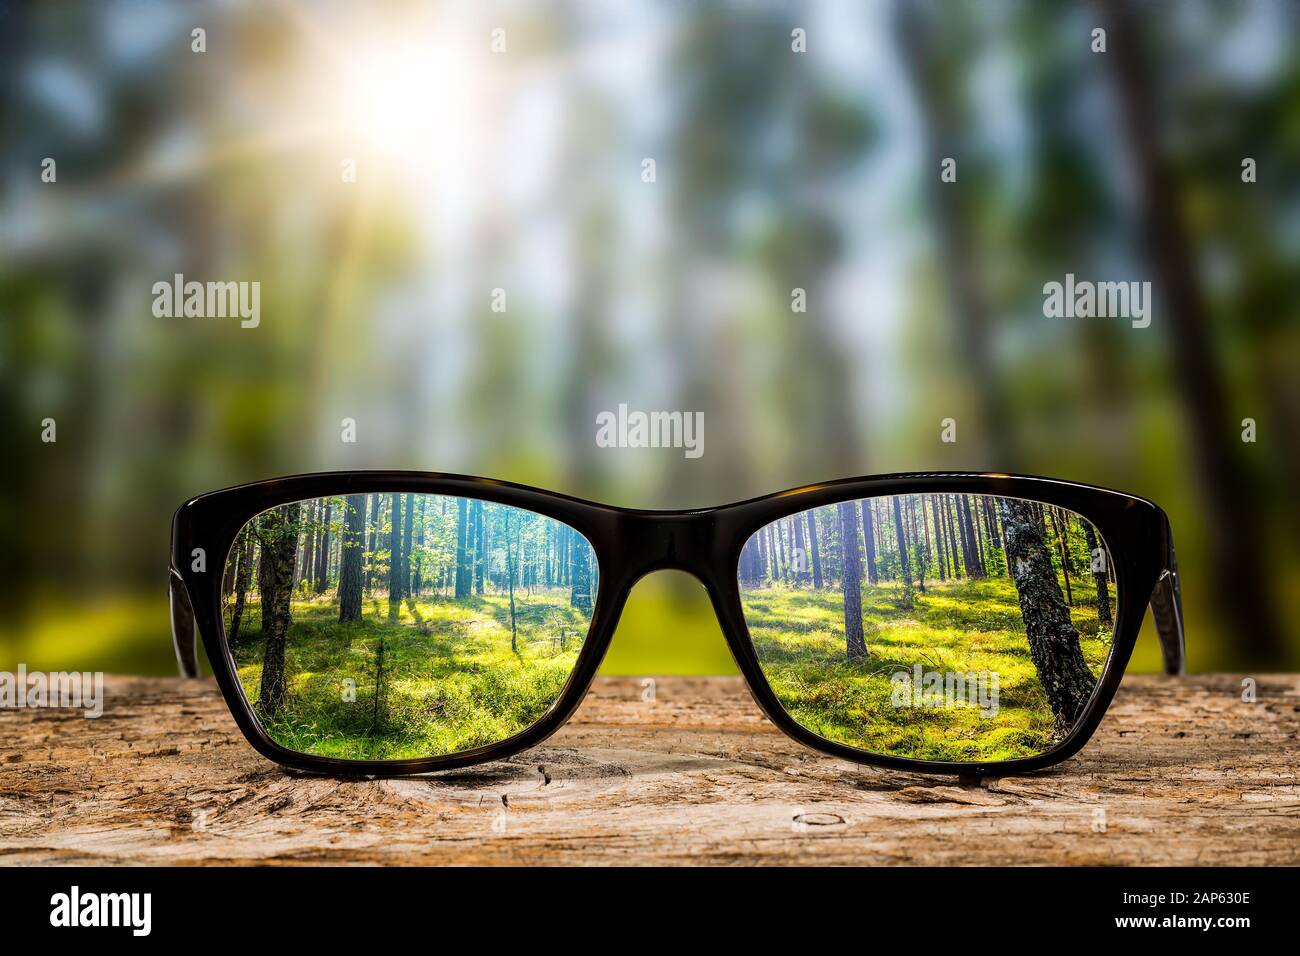 Gafas de visión del ojo de madera de fondo focus lens anteojos naturaleza reflexión mirar mirando a través de ver claro concepto de vista transparente del amanecer prescrip Foto de stock